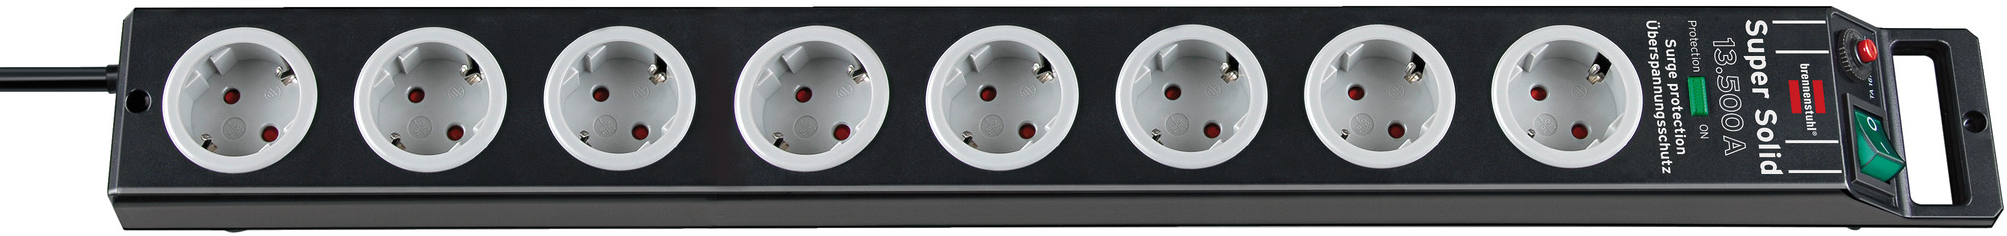 Brennenstuhl Super-Solid, Steckdosenleiste 8-fach mit Überspannungschutz, schwarz, 2,5m Kabel